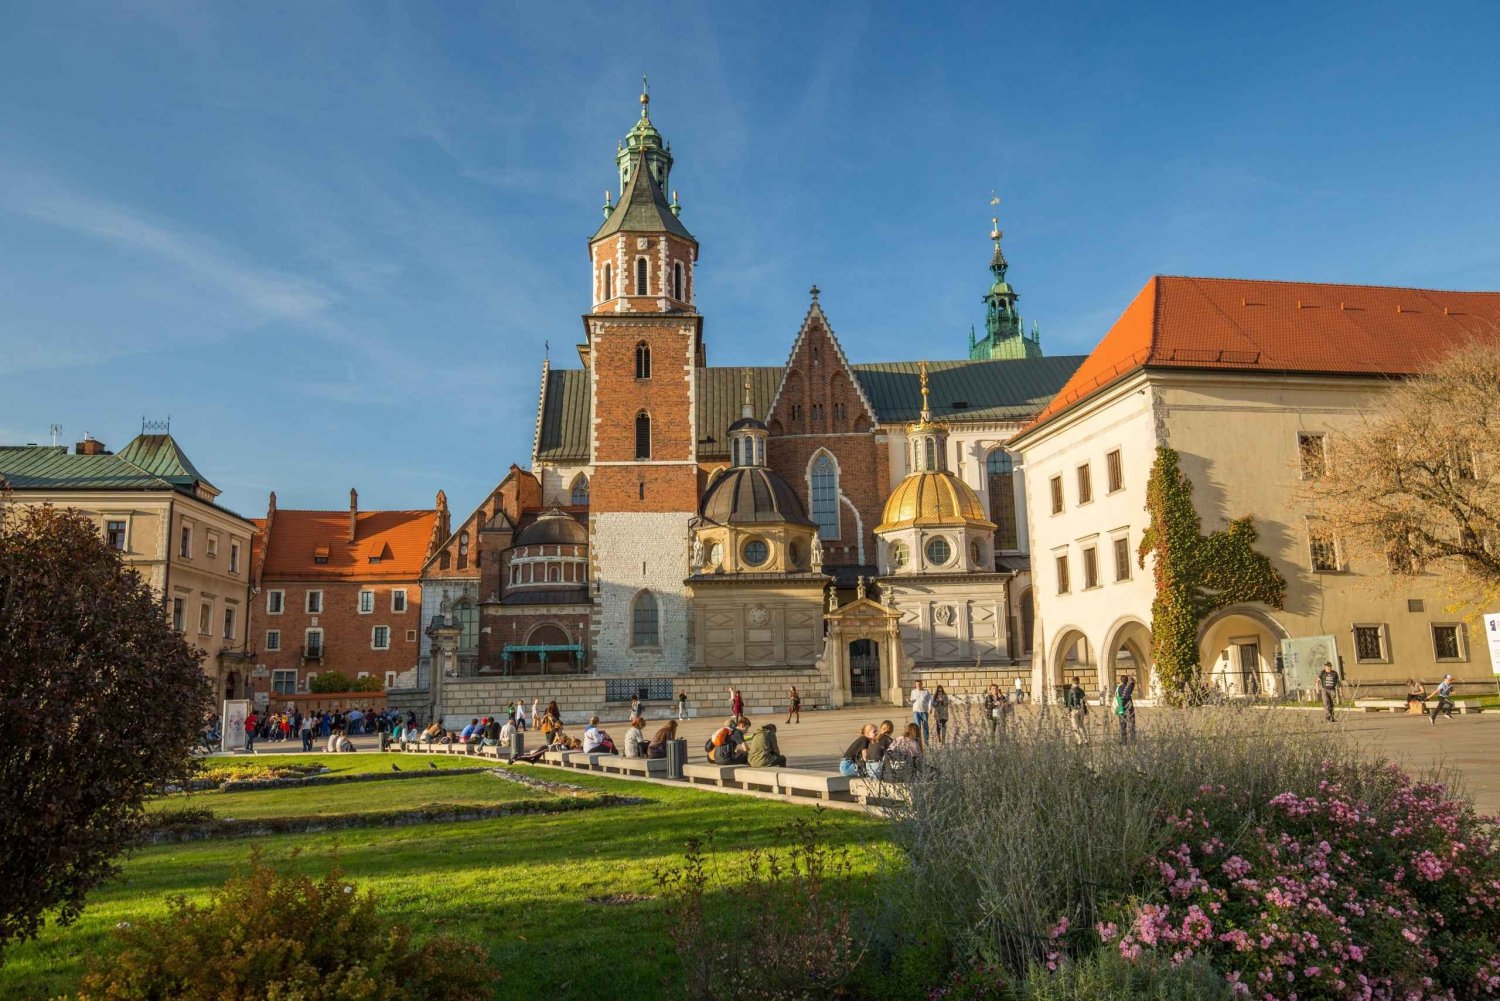 Krakow: Wawel-slottet, katedralen, Rynek tunnelbana & lunch